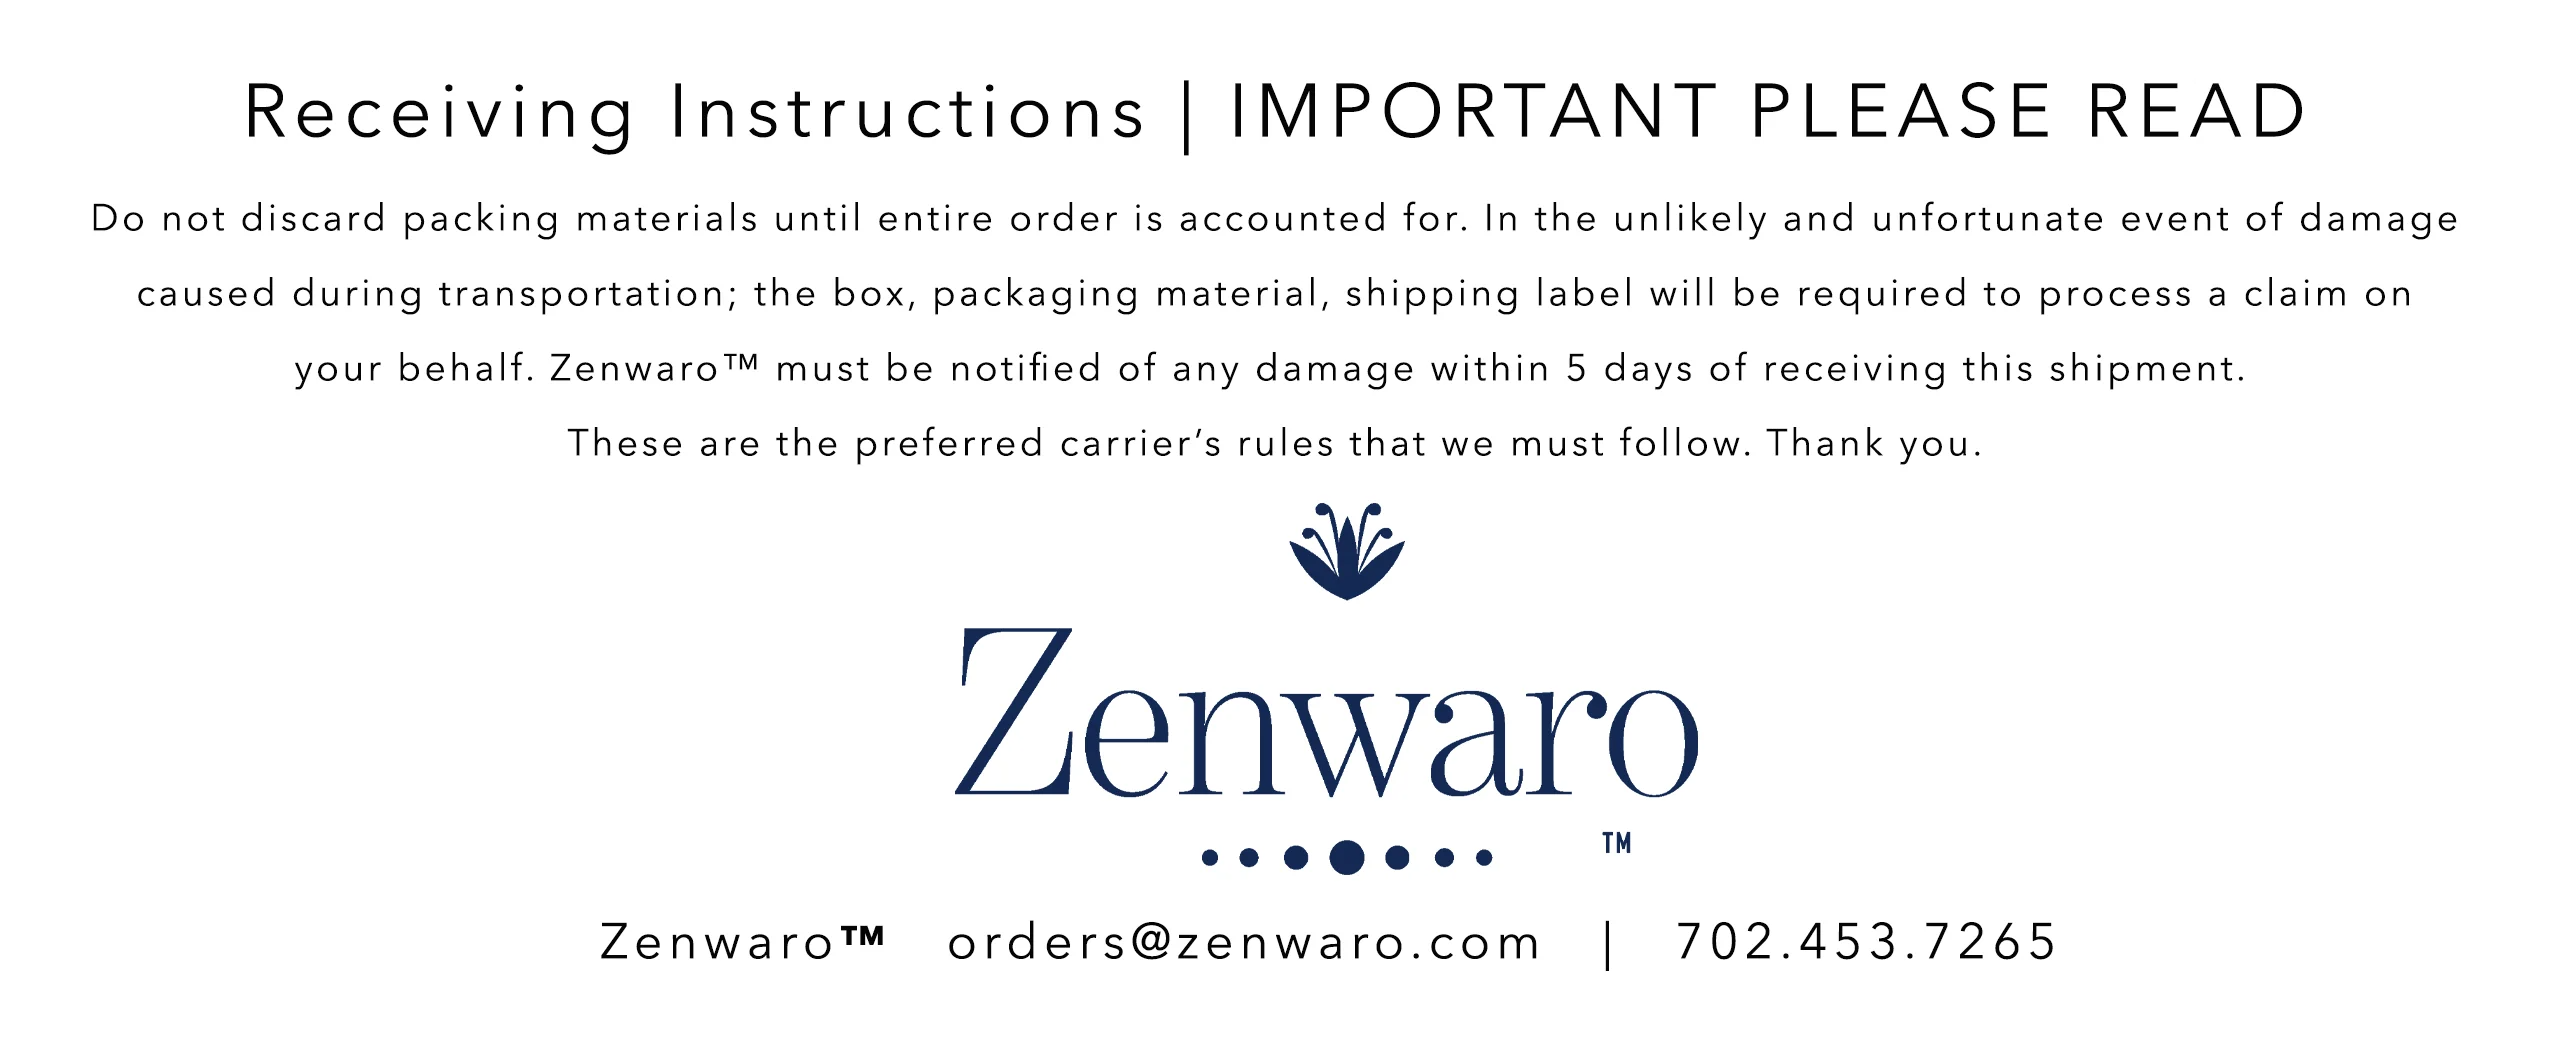 Zenwaro Order Receiving Instructions 